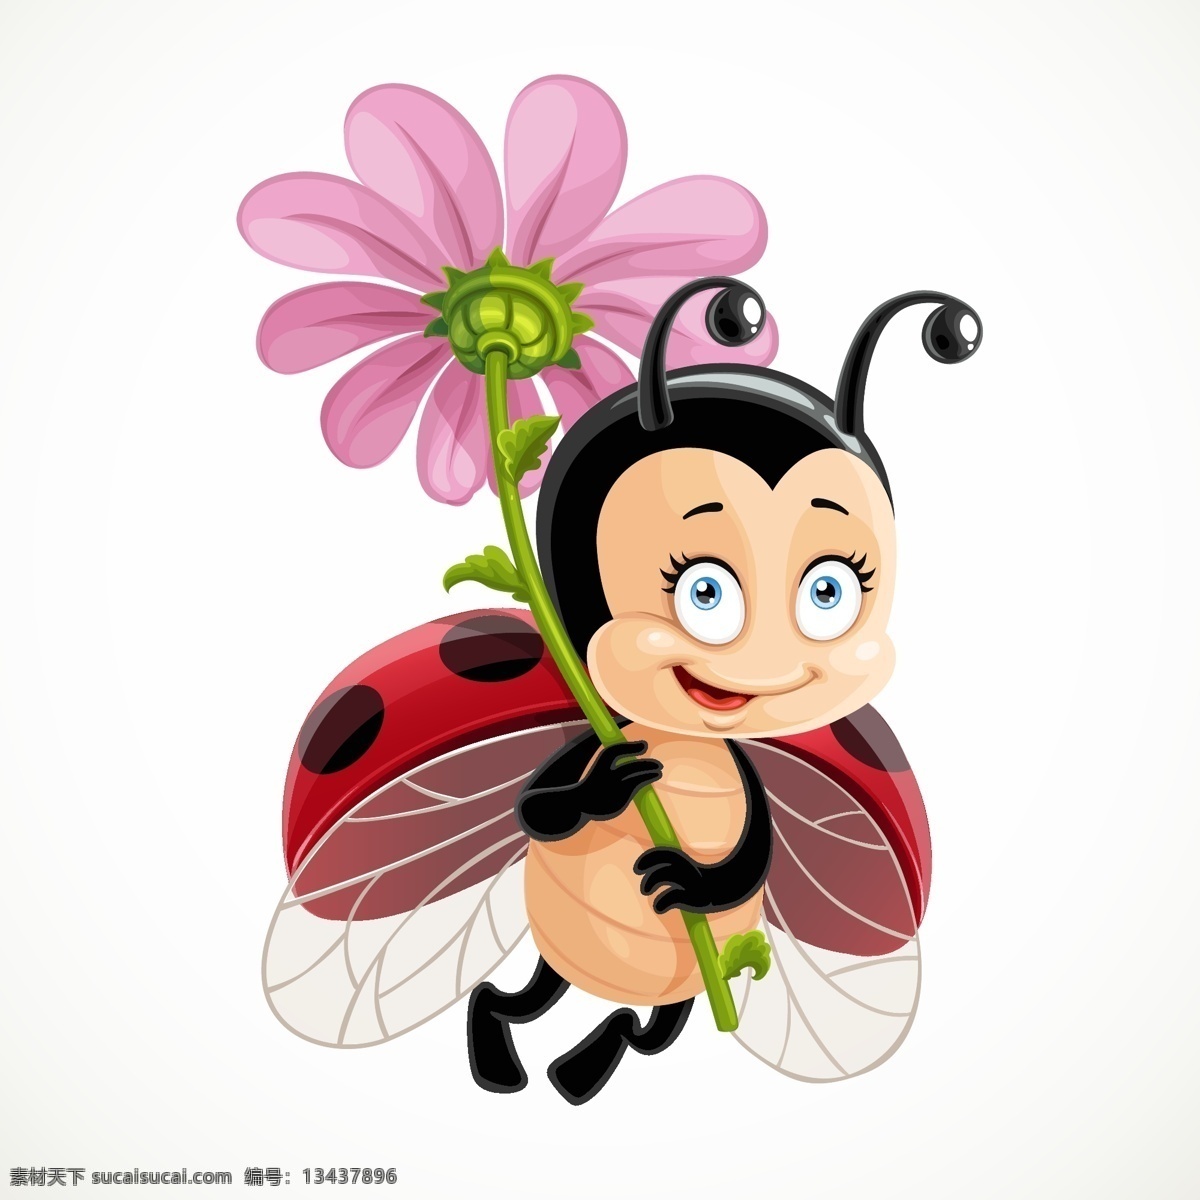 卡通瓢虫 瓢虫 可爱 卡哇伊 昆虫 卡通动物生物 卡通设计